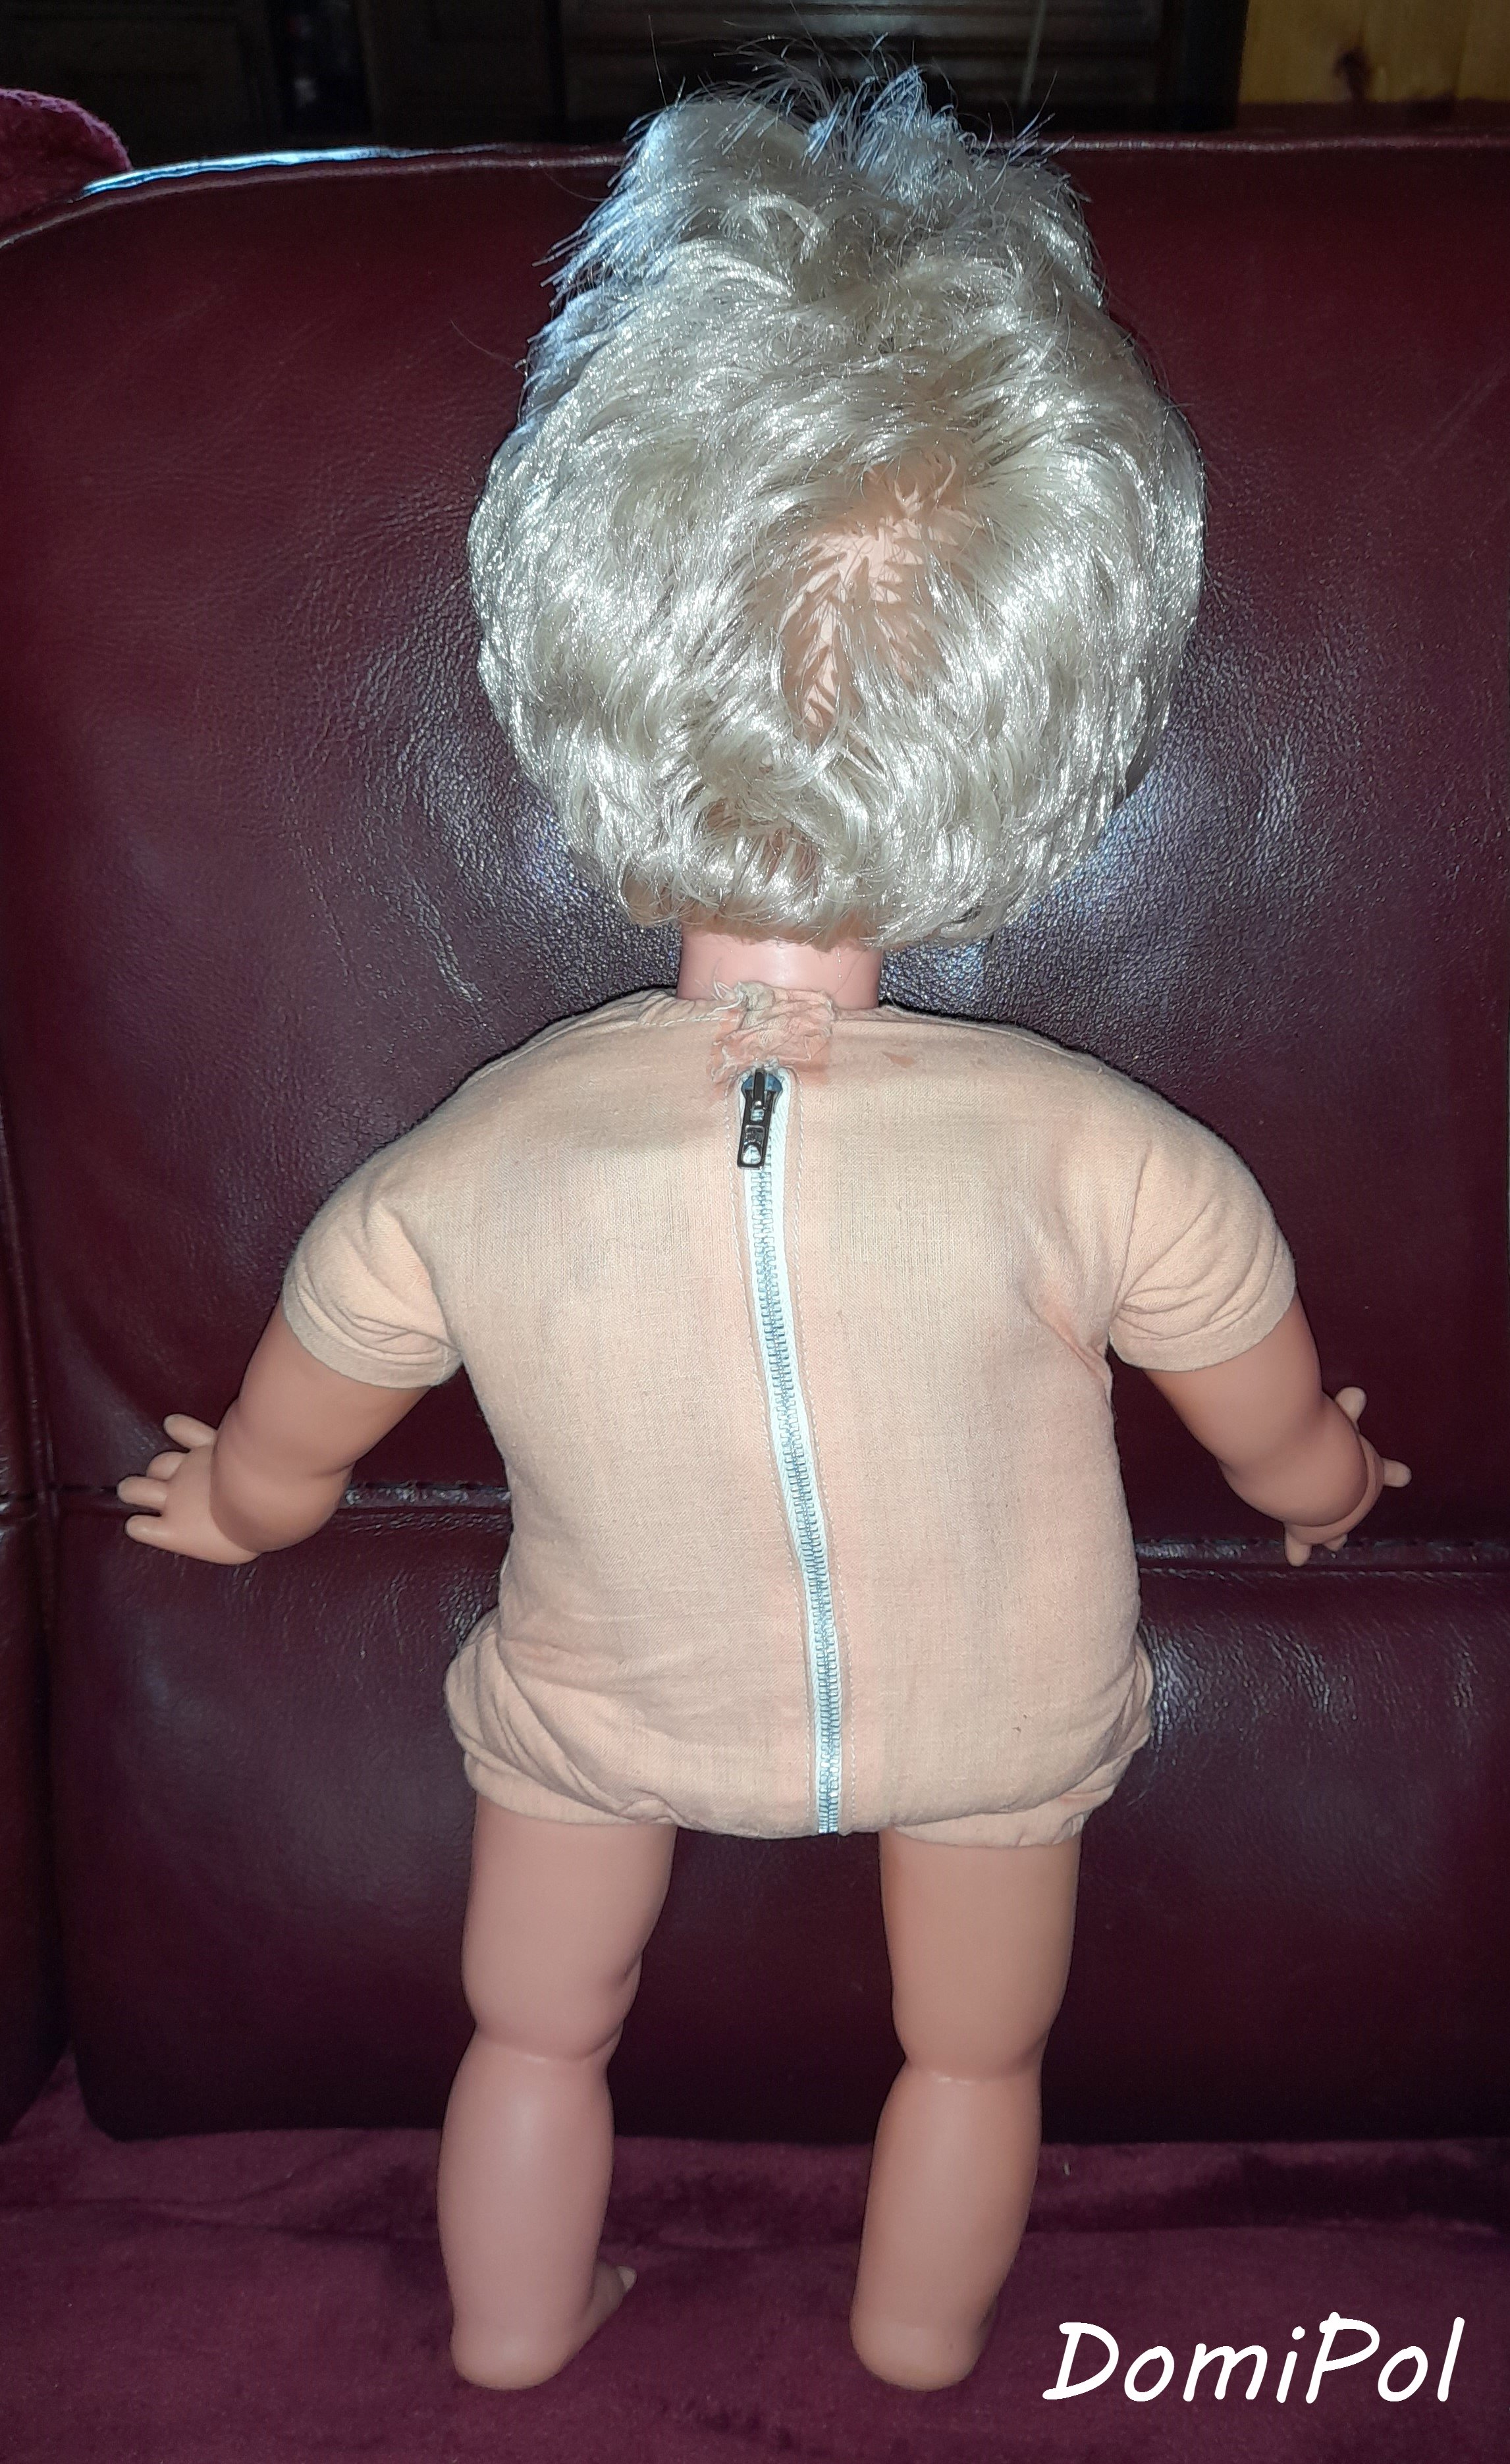 Bro-kant - Mini poupée MON AMI vintage années 70